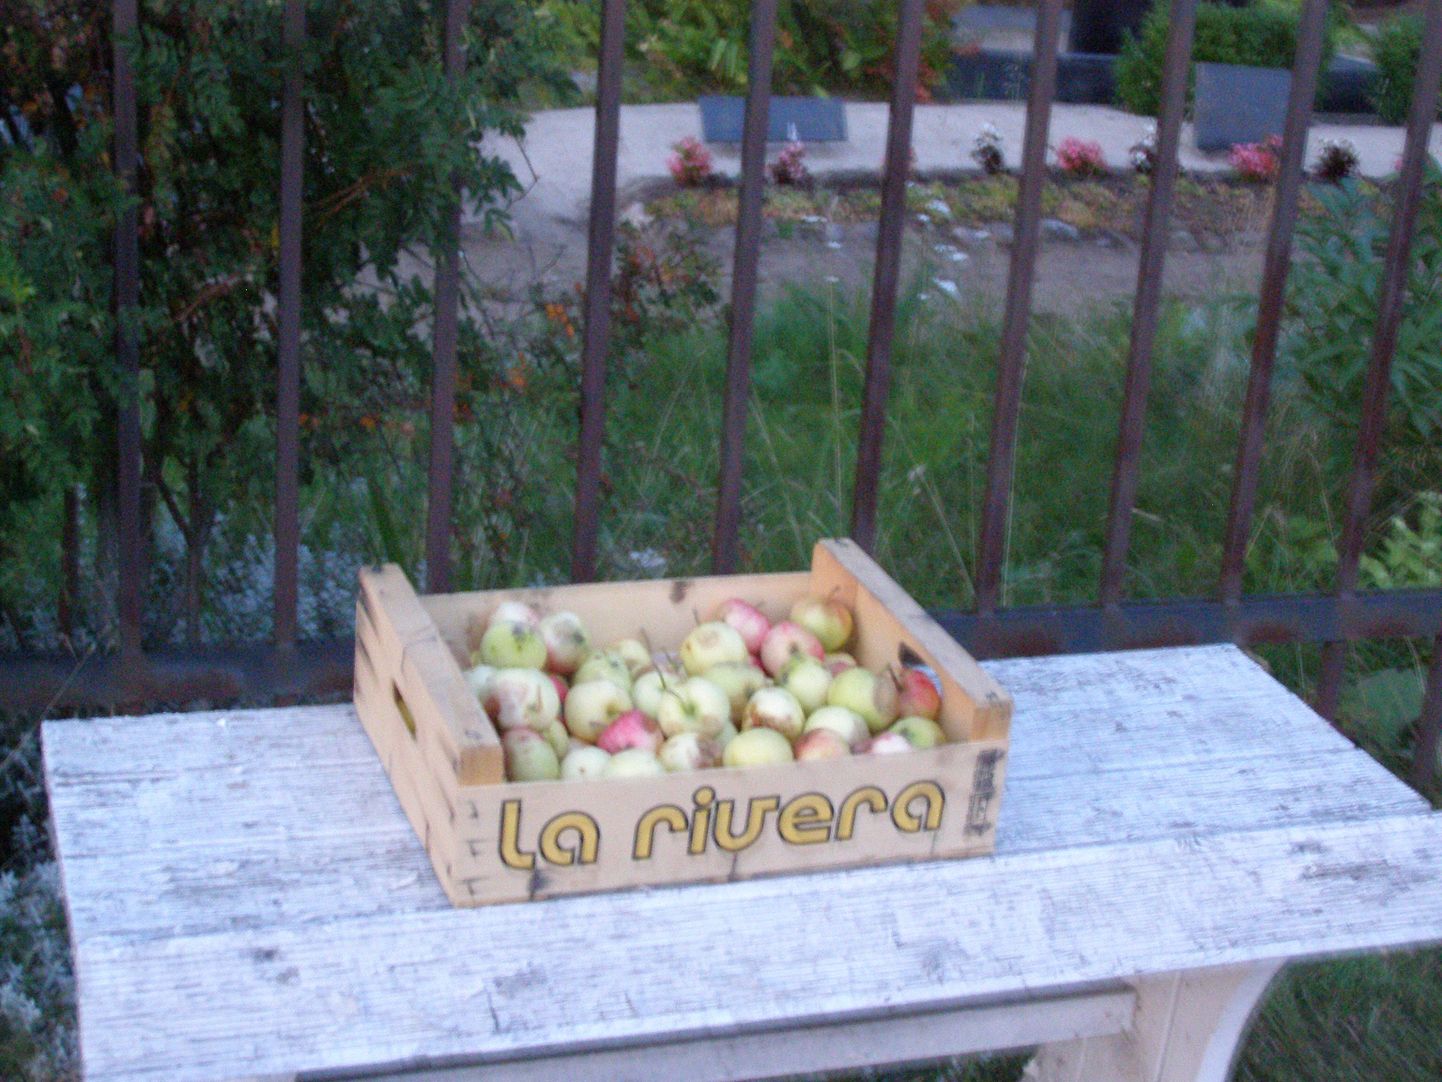 Kast õuntega Tapa linnakalmistu värava juures.